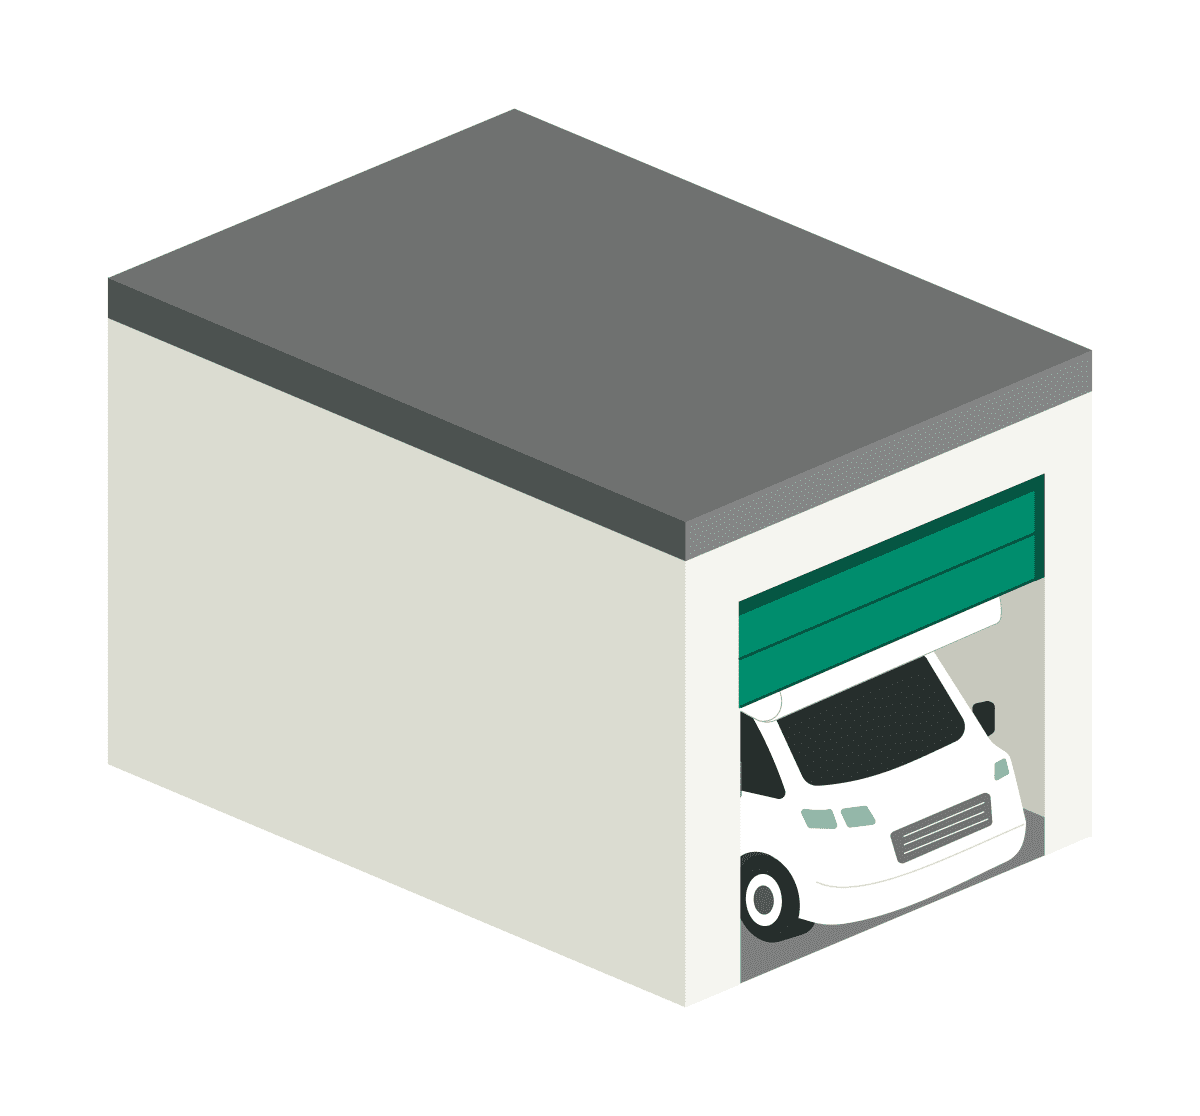 Stilisierte Caravan-Garage mit offenem Sektionaltor und Wohnmobil